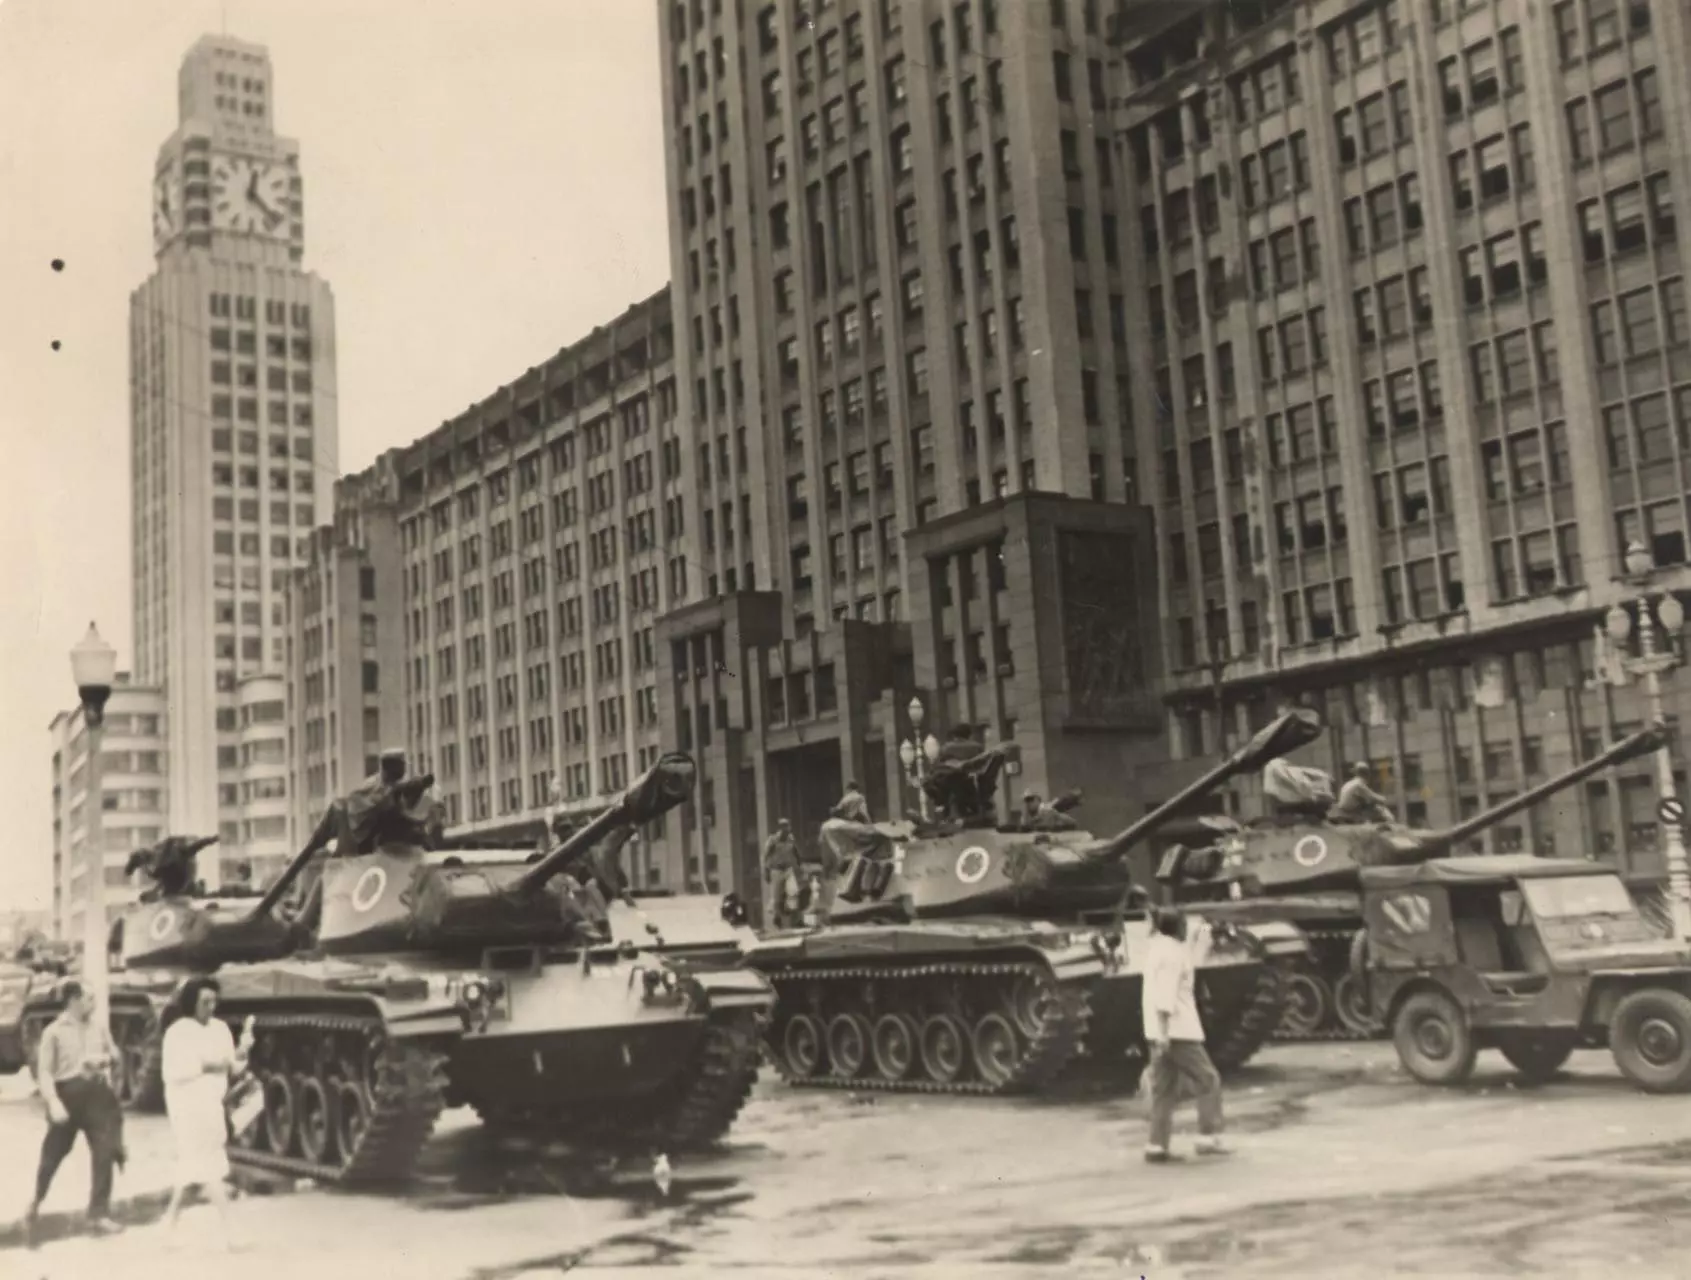 Tanques em meio a populares próximo a Avenida Getúlio Vargas no dia 2 de abril de 1964